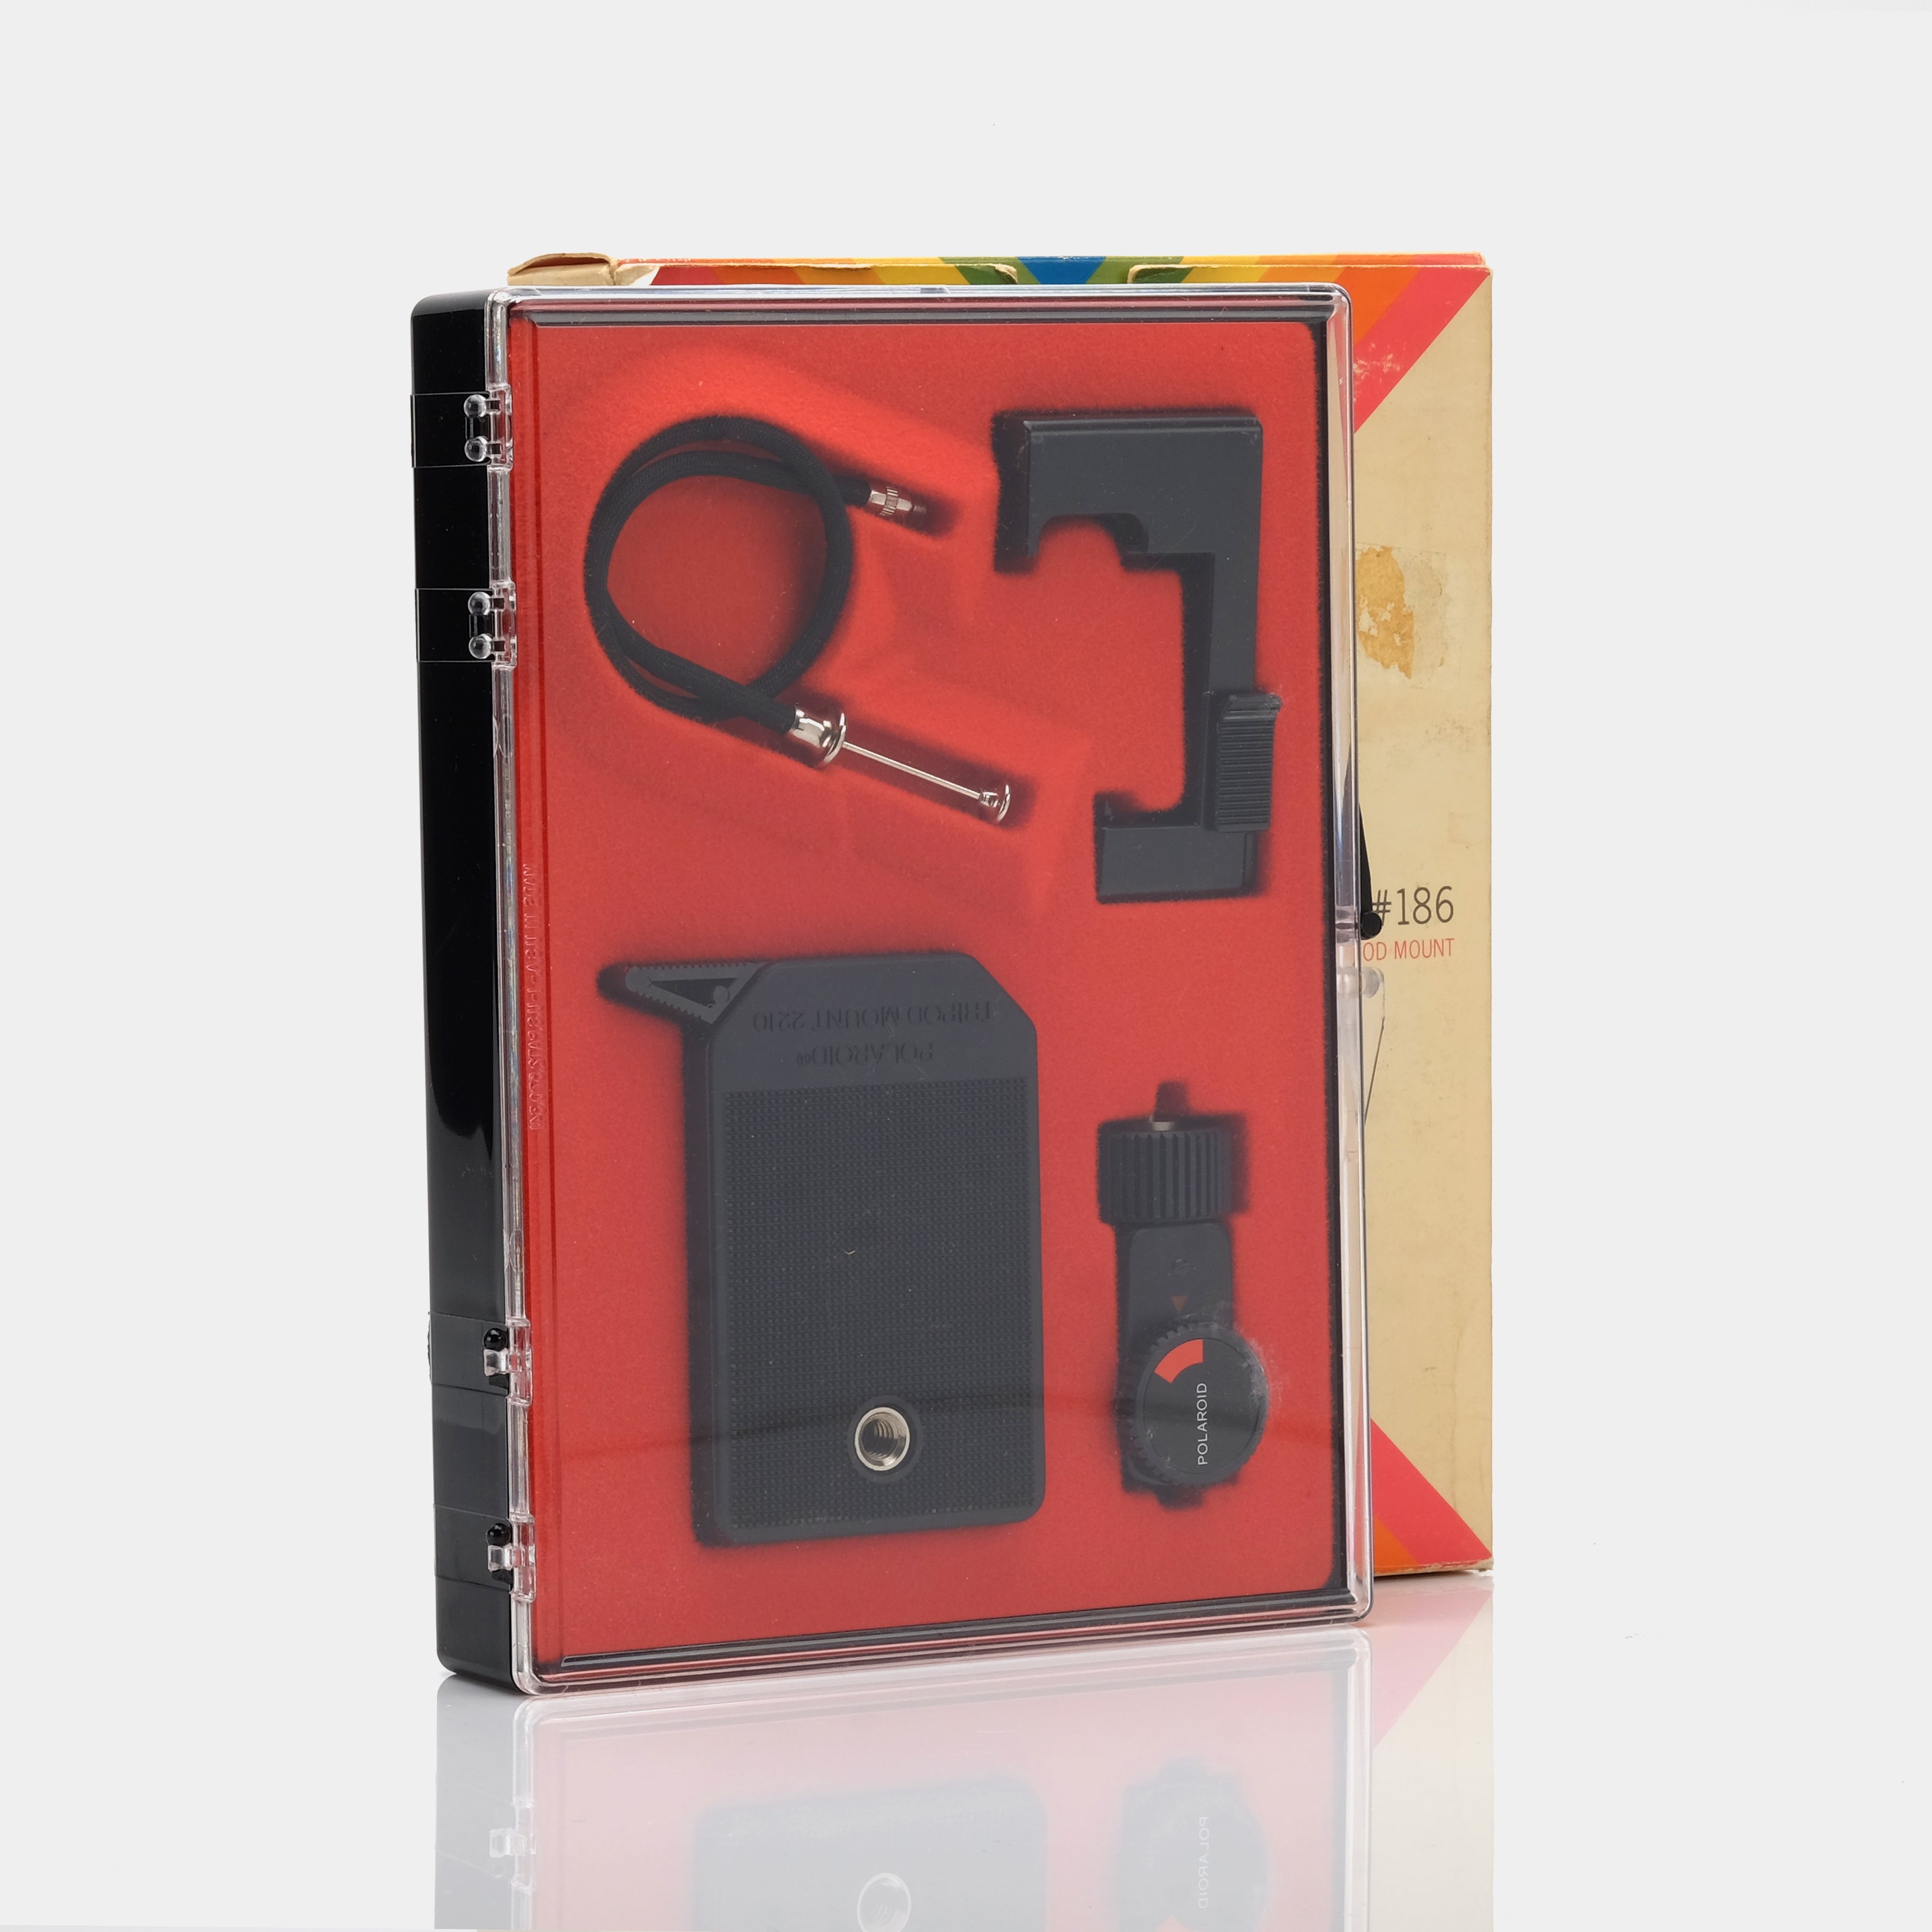 Polaroid SX-70 Pronto! Accessory Kit 186 with Box